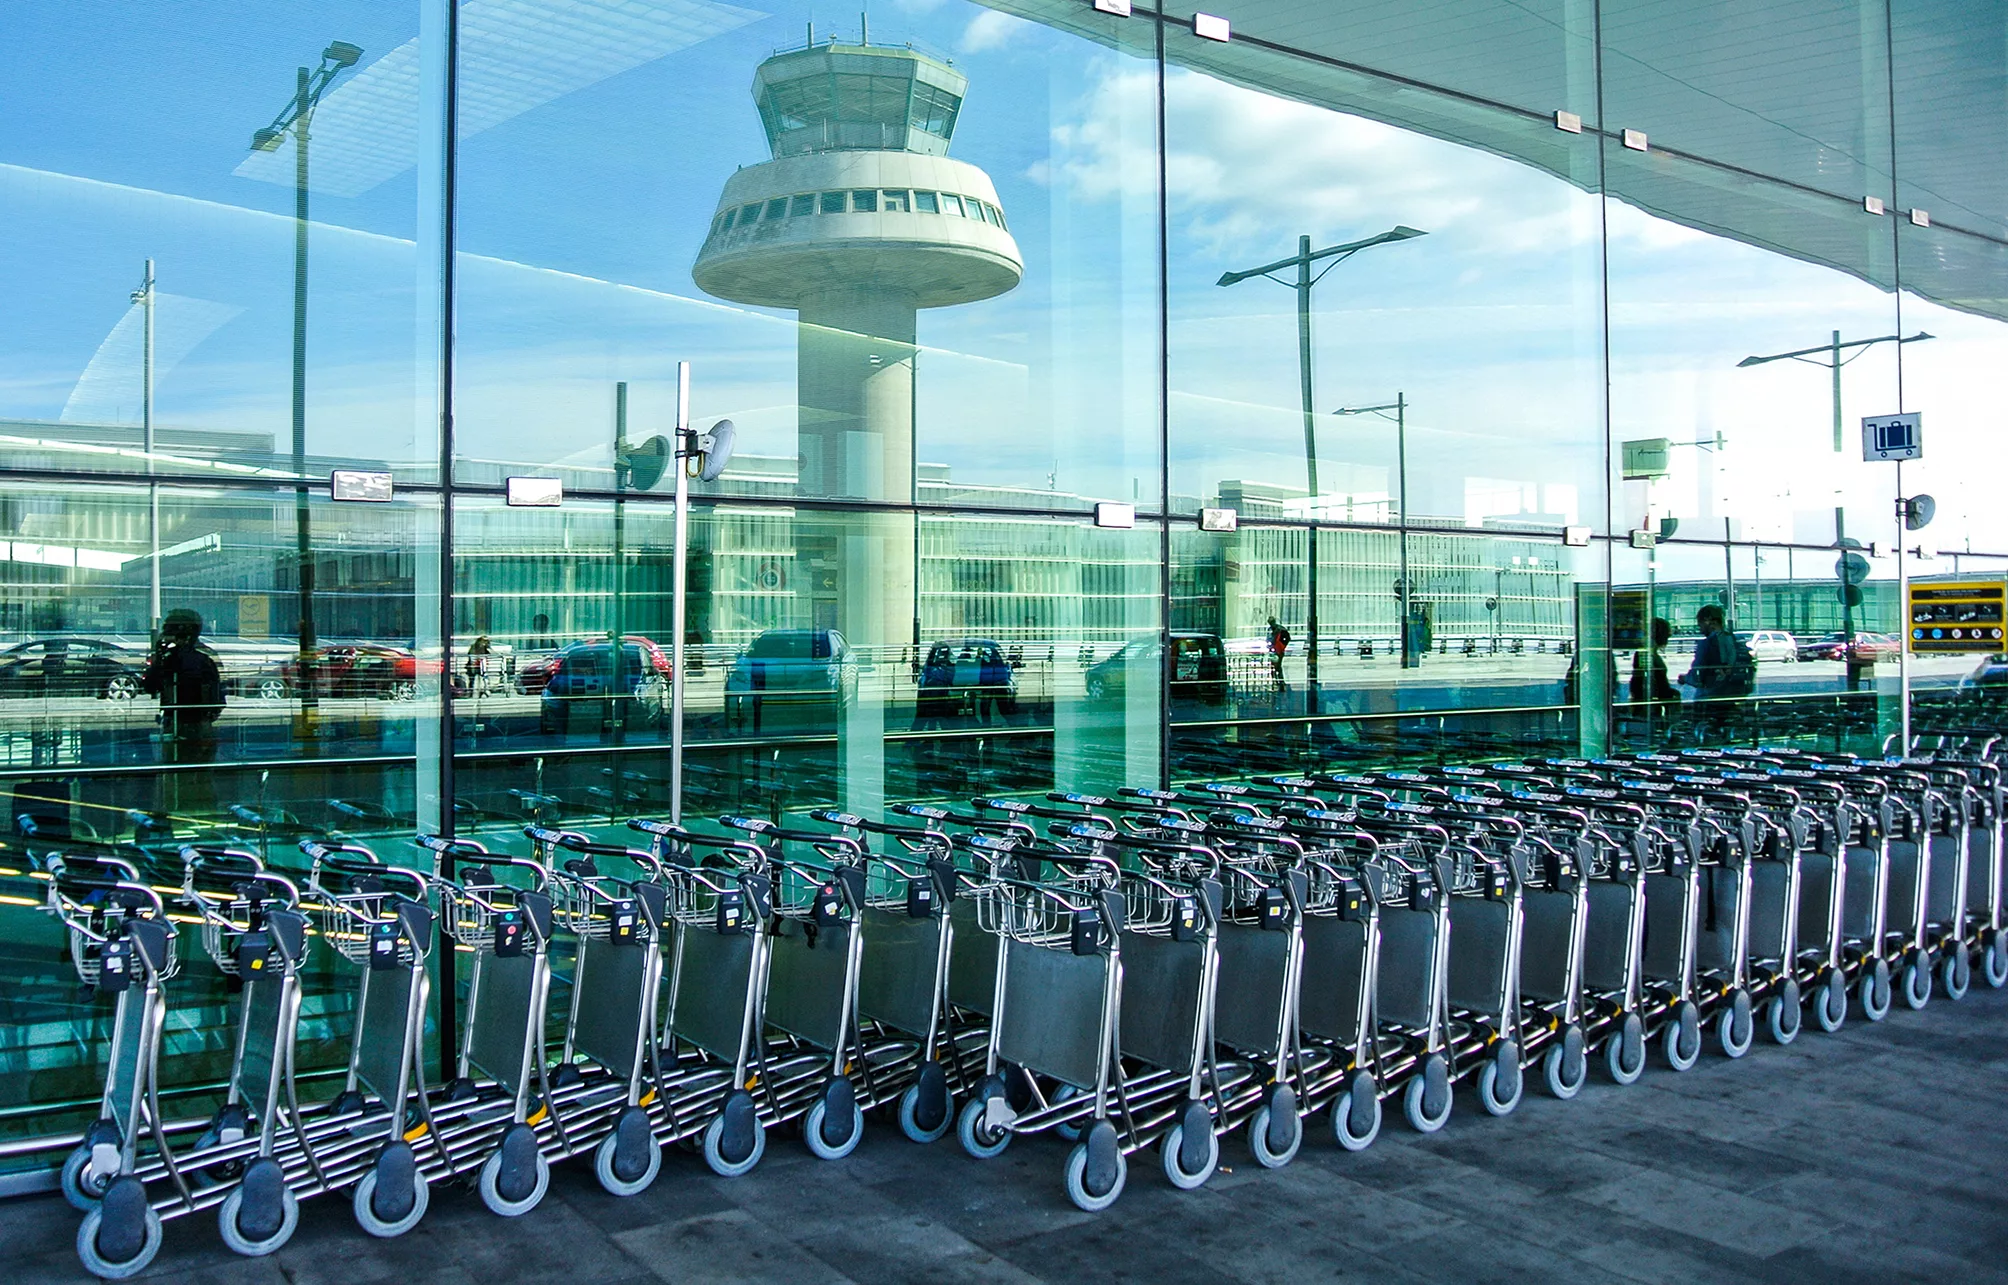 Barcelona és l’aeroport per sobre de 40 milions de passatgers que més creix a Europa